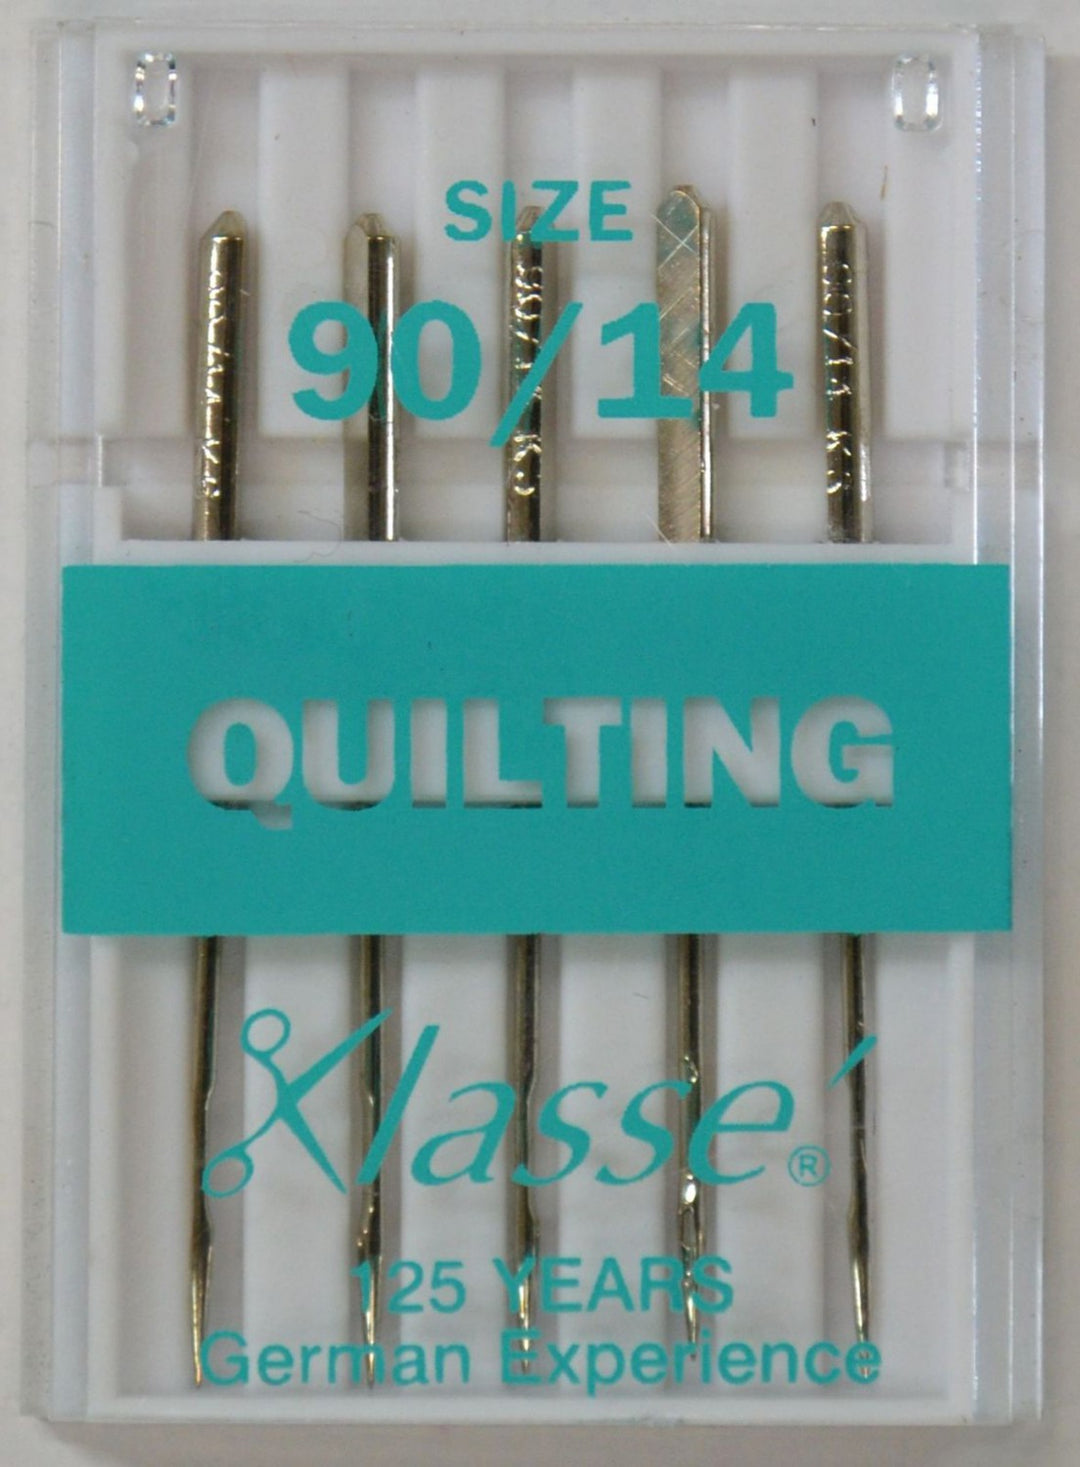 Klassé Quilting Needles 5ct 90/14 (1608905457709)